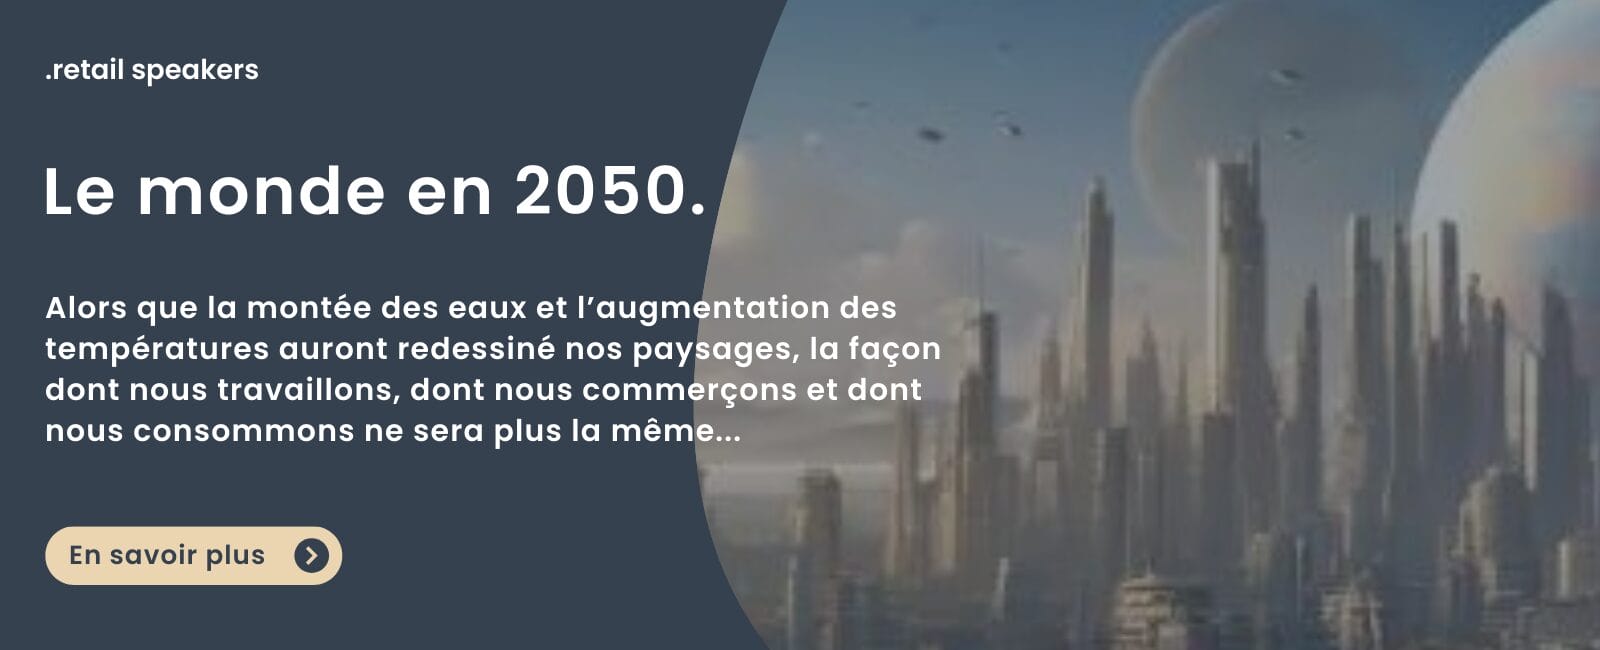 Le monde en 2050 par Arnaud Pagès, journaliste et conférencier